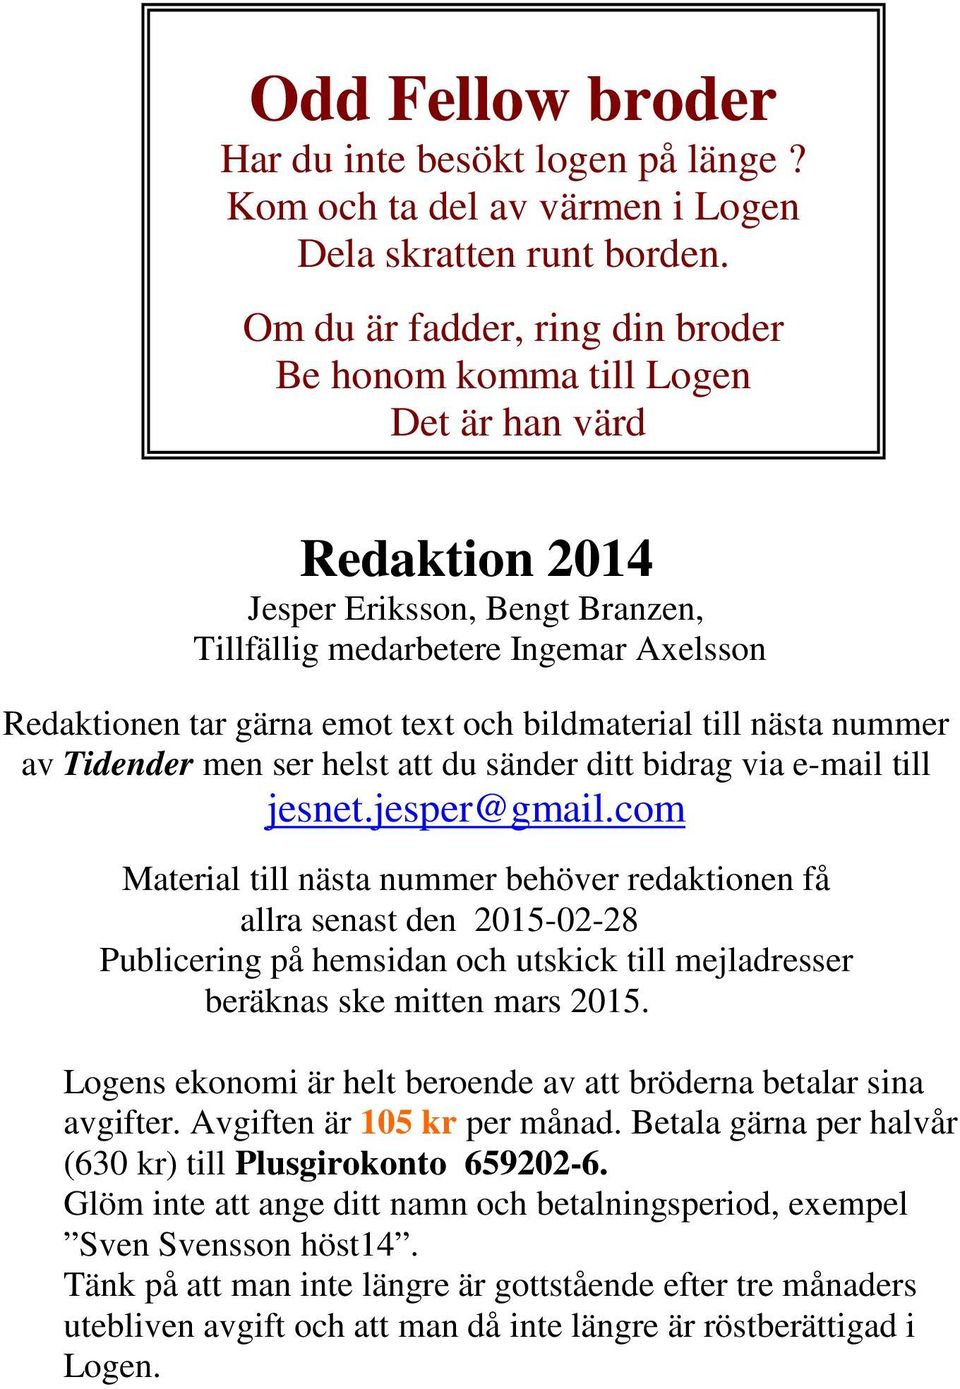 bildmaterial till nästa nummer av Tidender men ser helst att du sänder ditt bidrag via e-mail till jesnet.jesper@gmail.